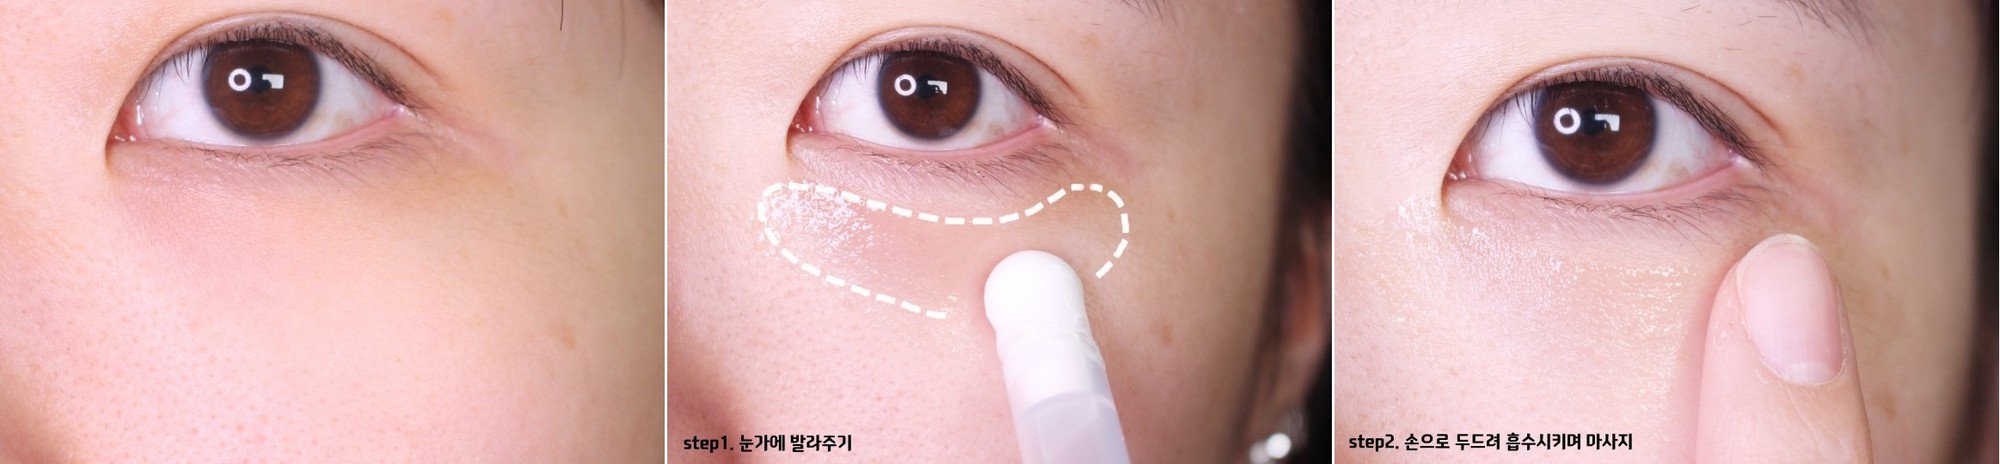 5 loại mặt nạ có tác dụng cải thiện rõ rệt vùng quầng thâm dưới mắt - Ảnh 24.